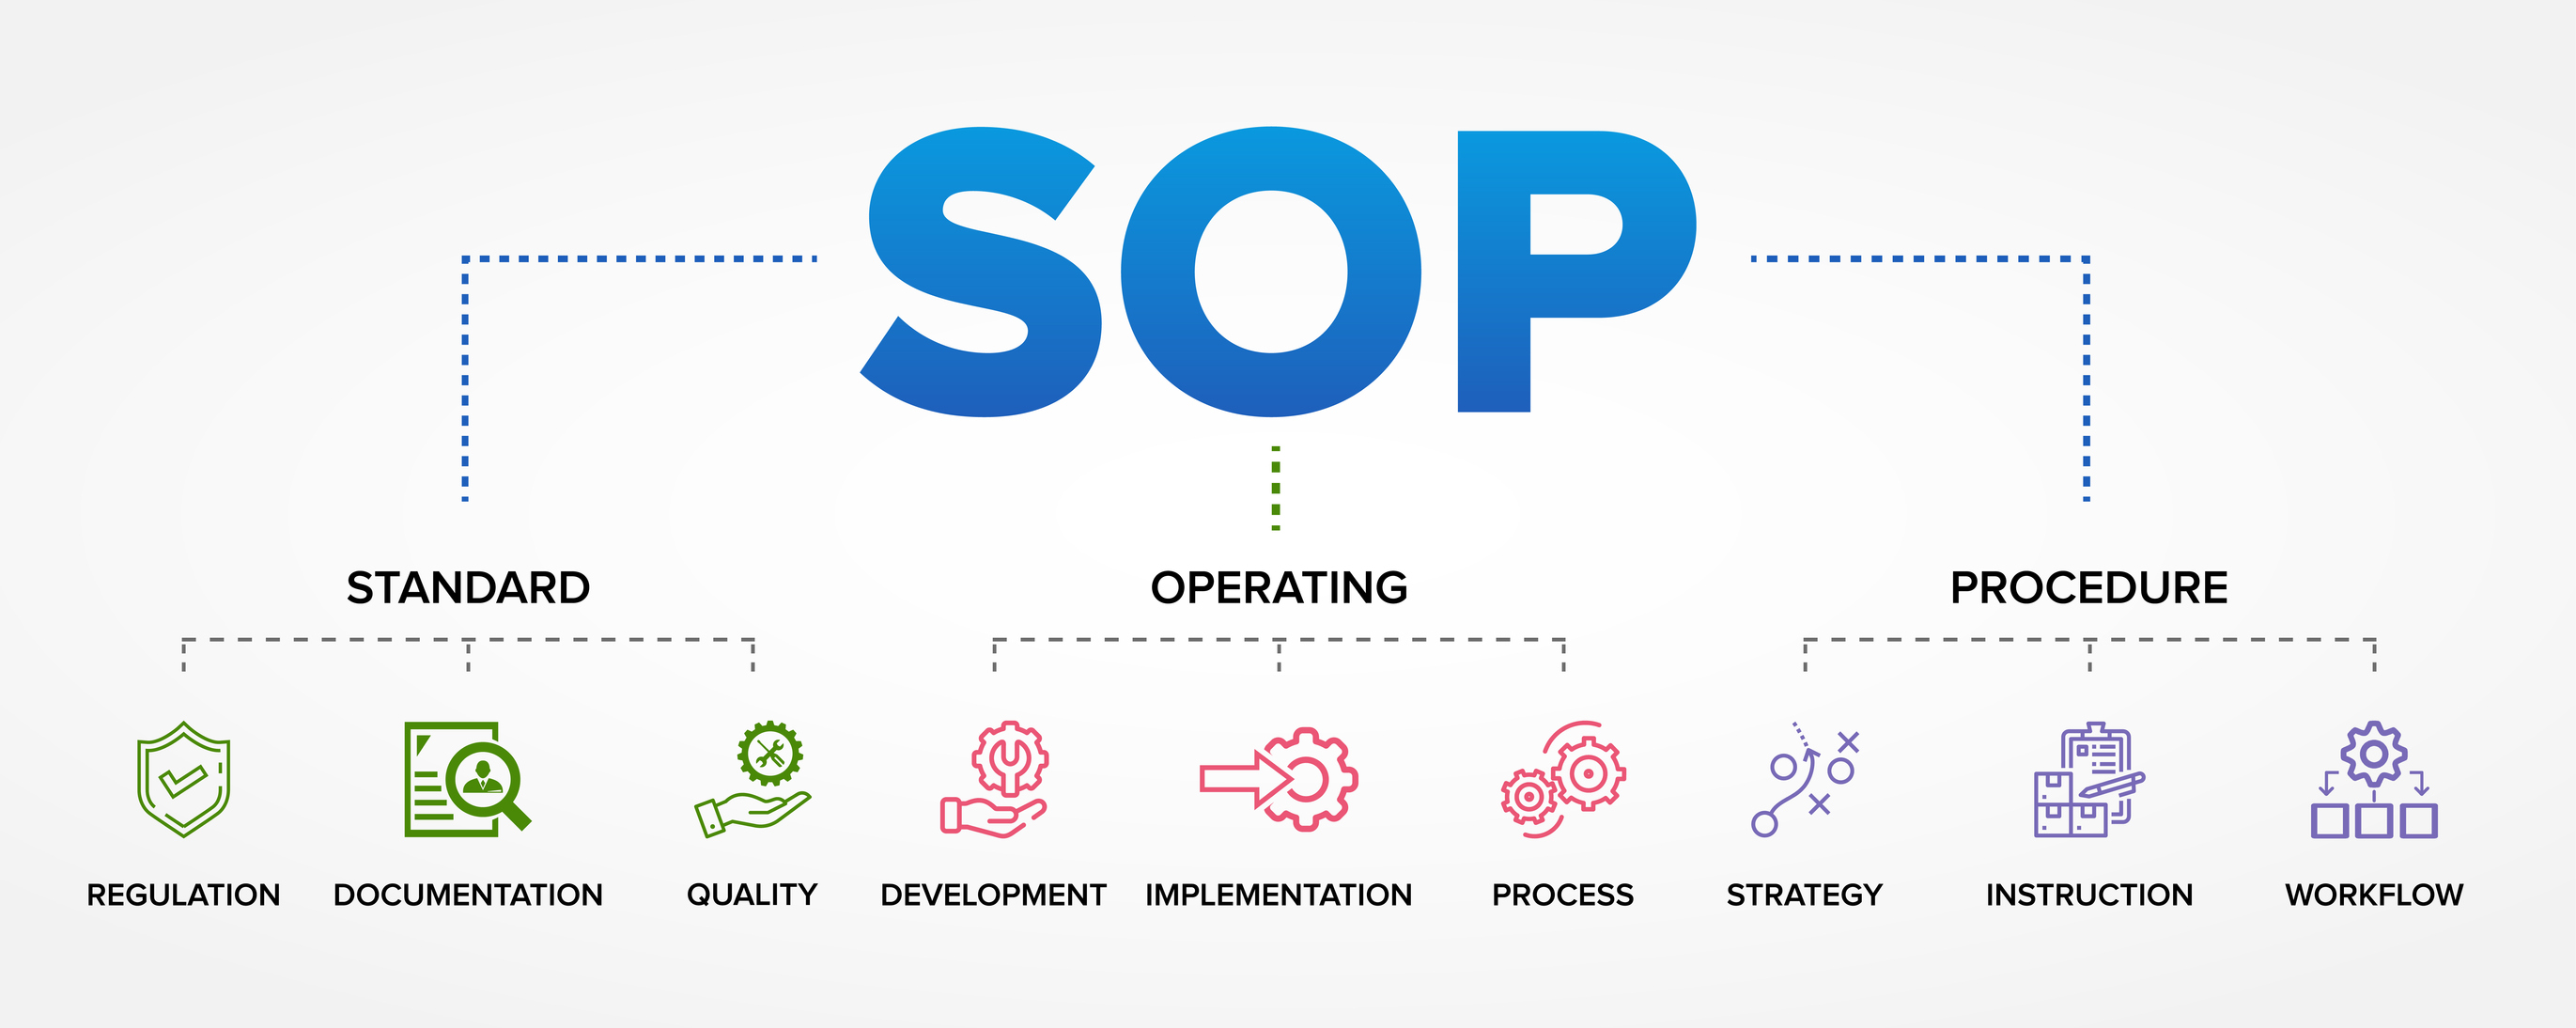 SOP - Standard Operating Procedures